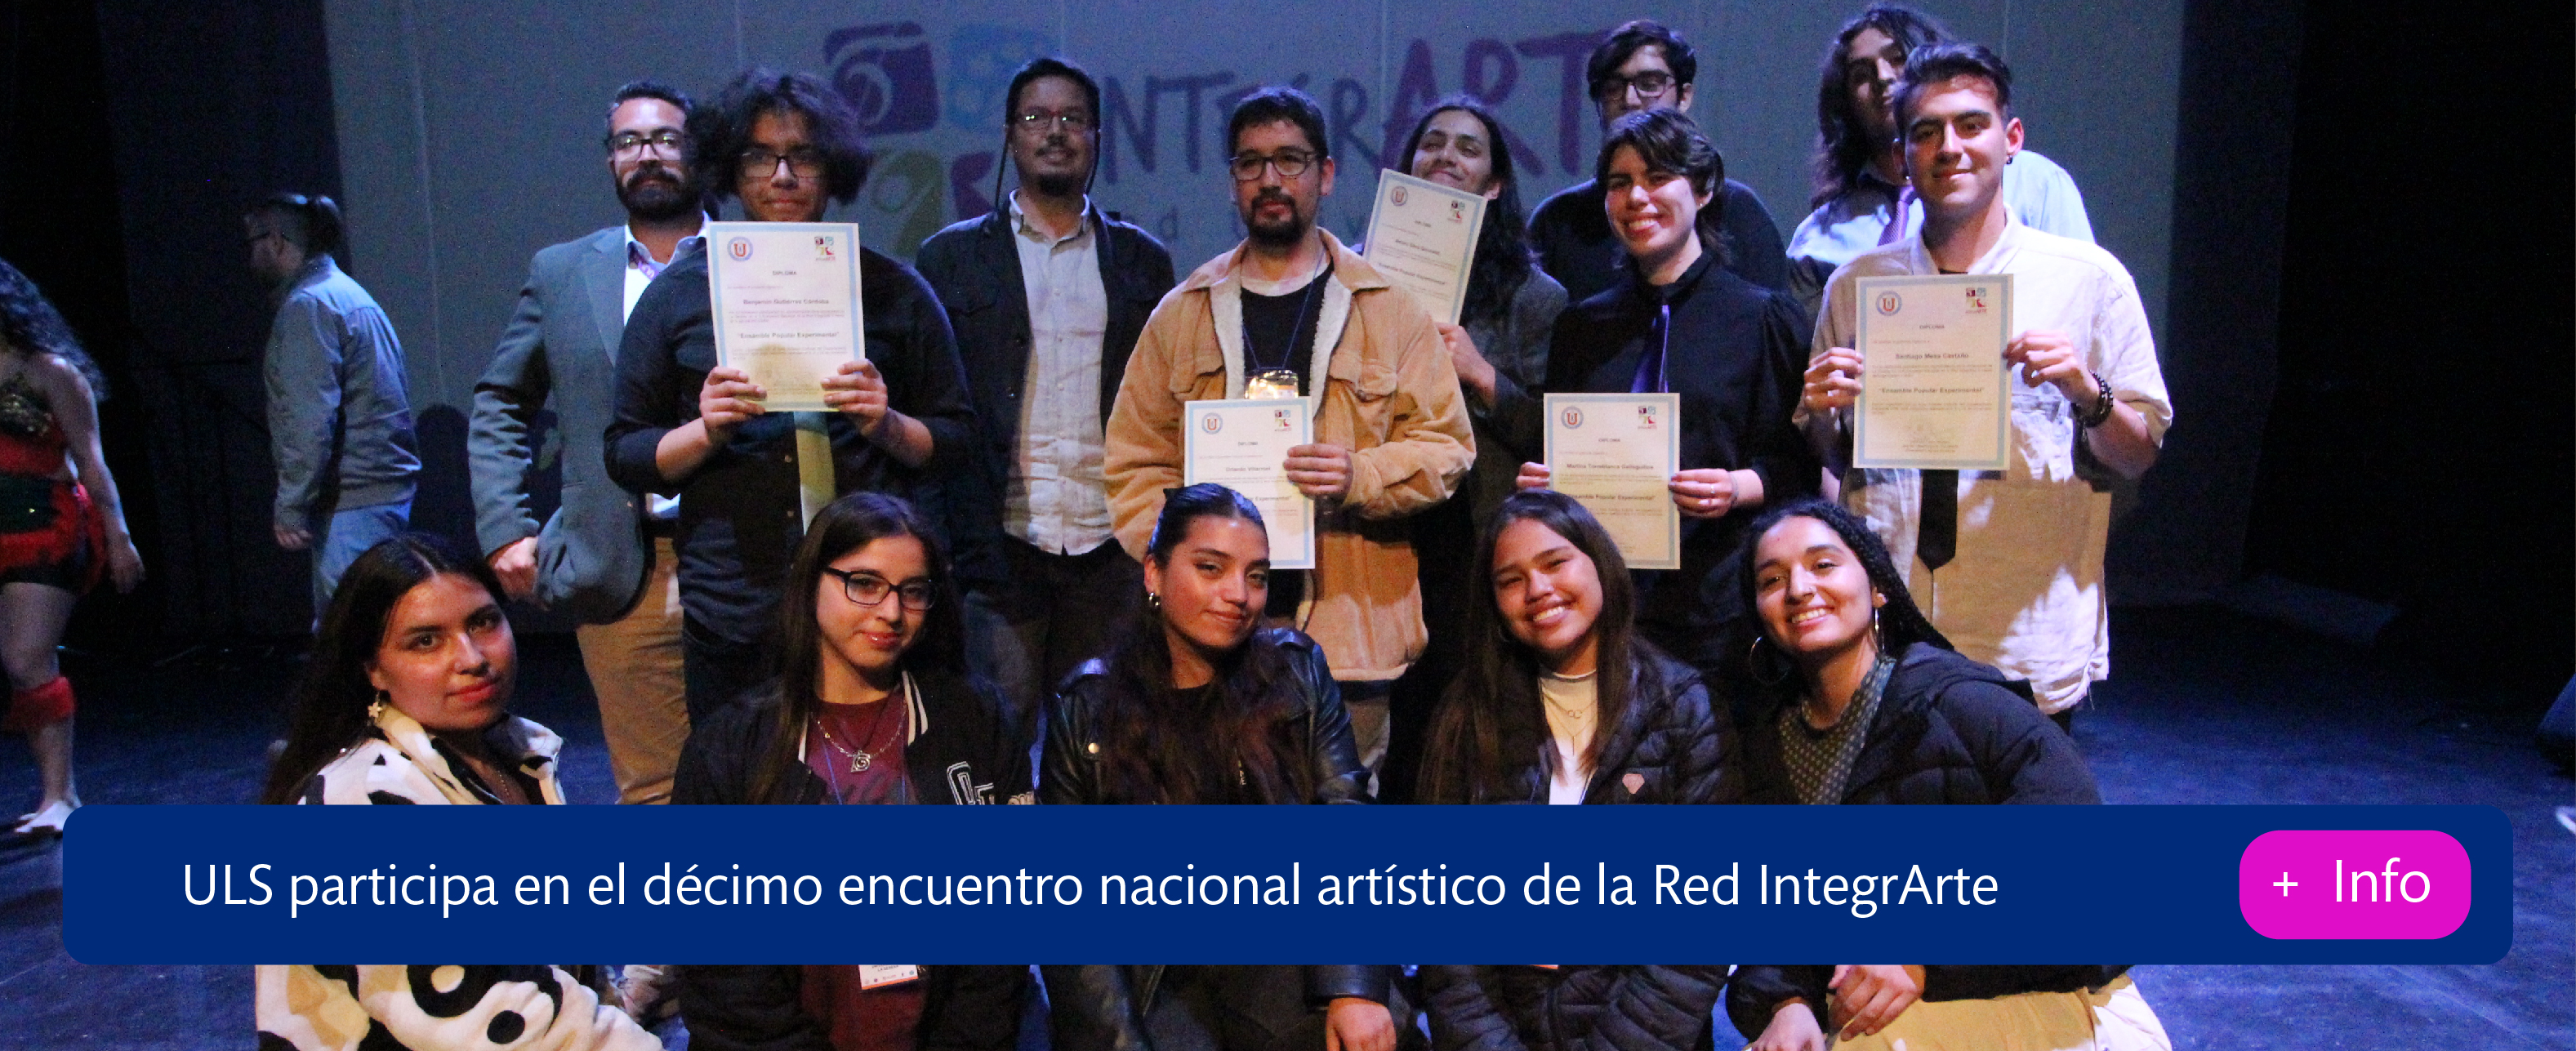 ULS participa en el décimo encuentro nacional artístico de la Red IntegrArte